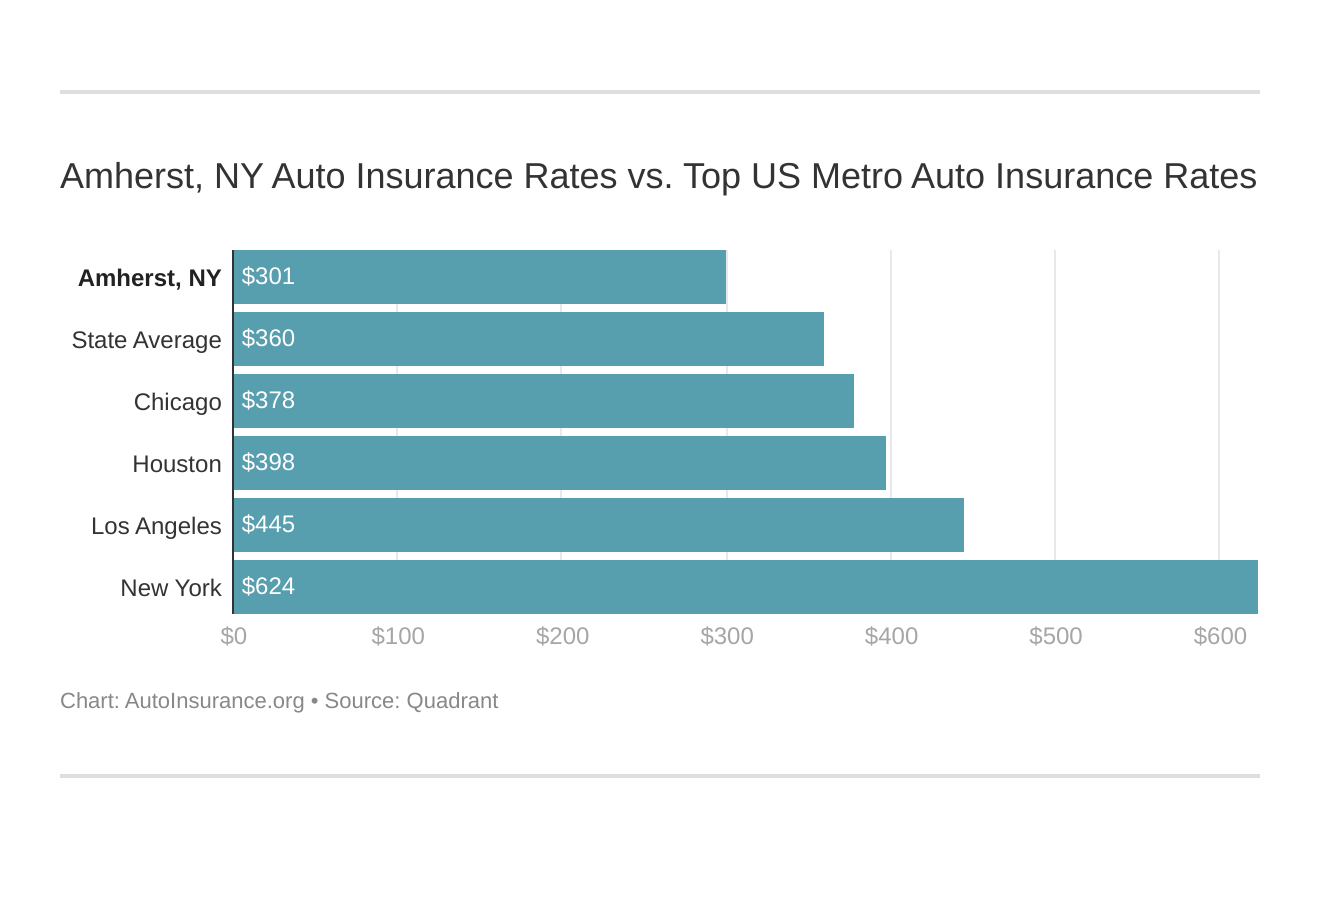 Amherst, NY Auto Insurance Rates vs. Top US Metro Auto Insurance Rates